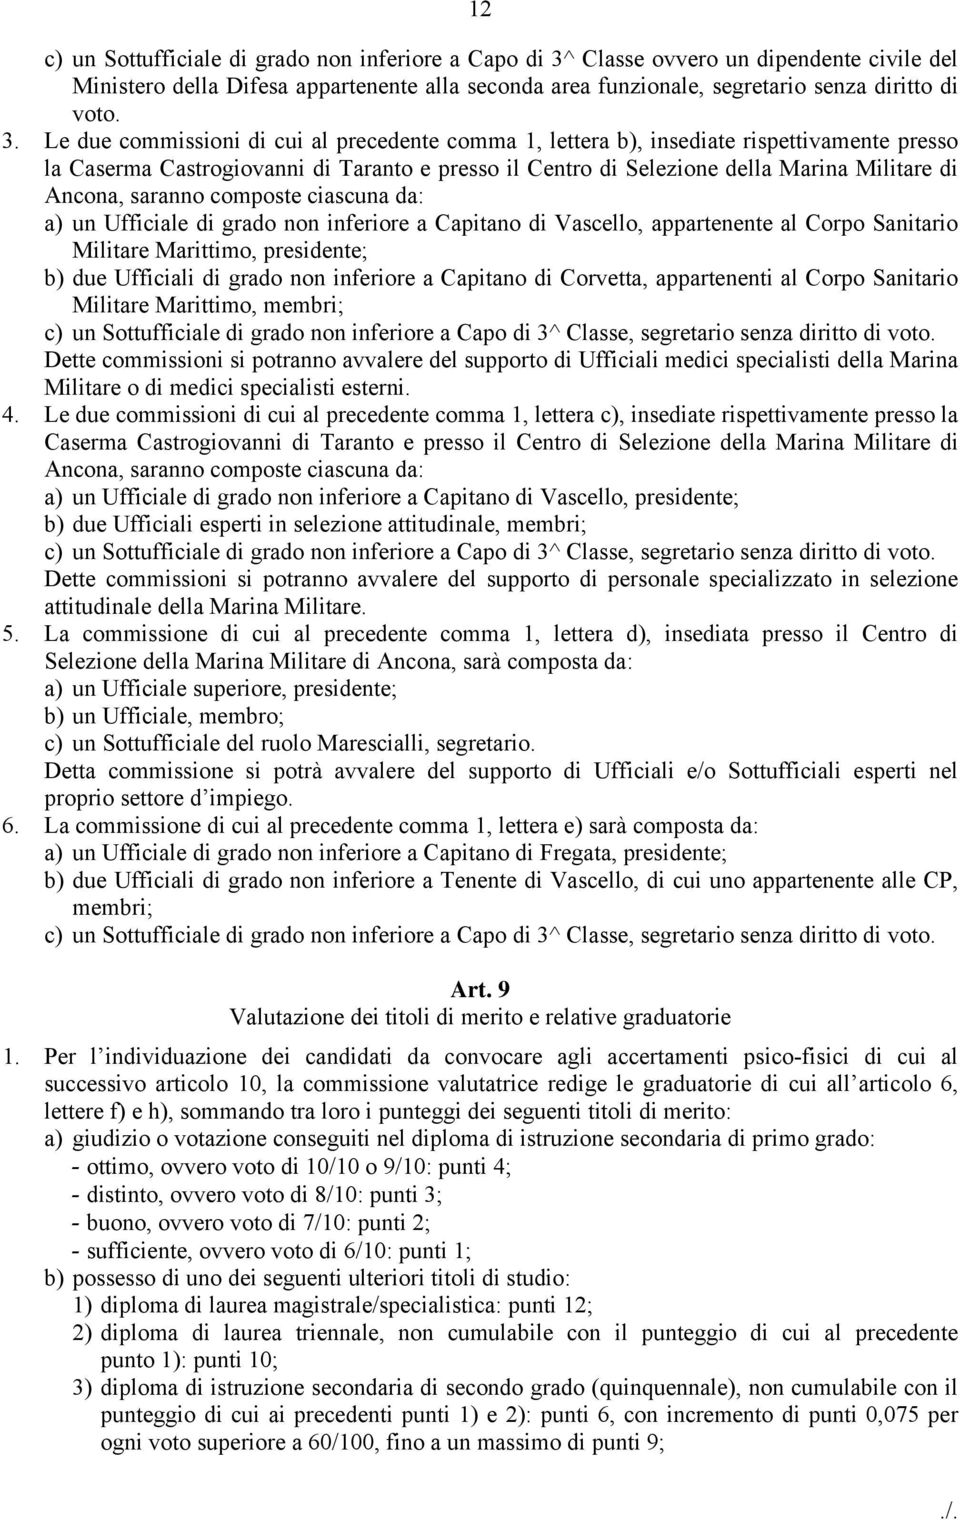 Le due commissioni di cui al precedente comma 1, lettera b), insediate rispettivamente presso la Caserma Castrogiovanni di Taranto e presso il Centro di Selezione della Marina Militare di Ancona,